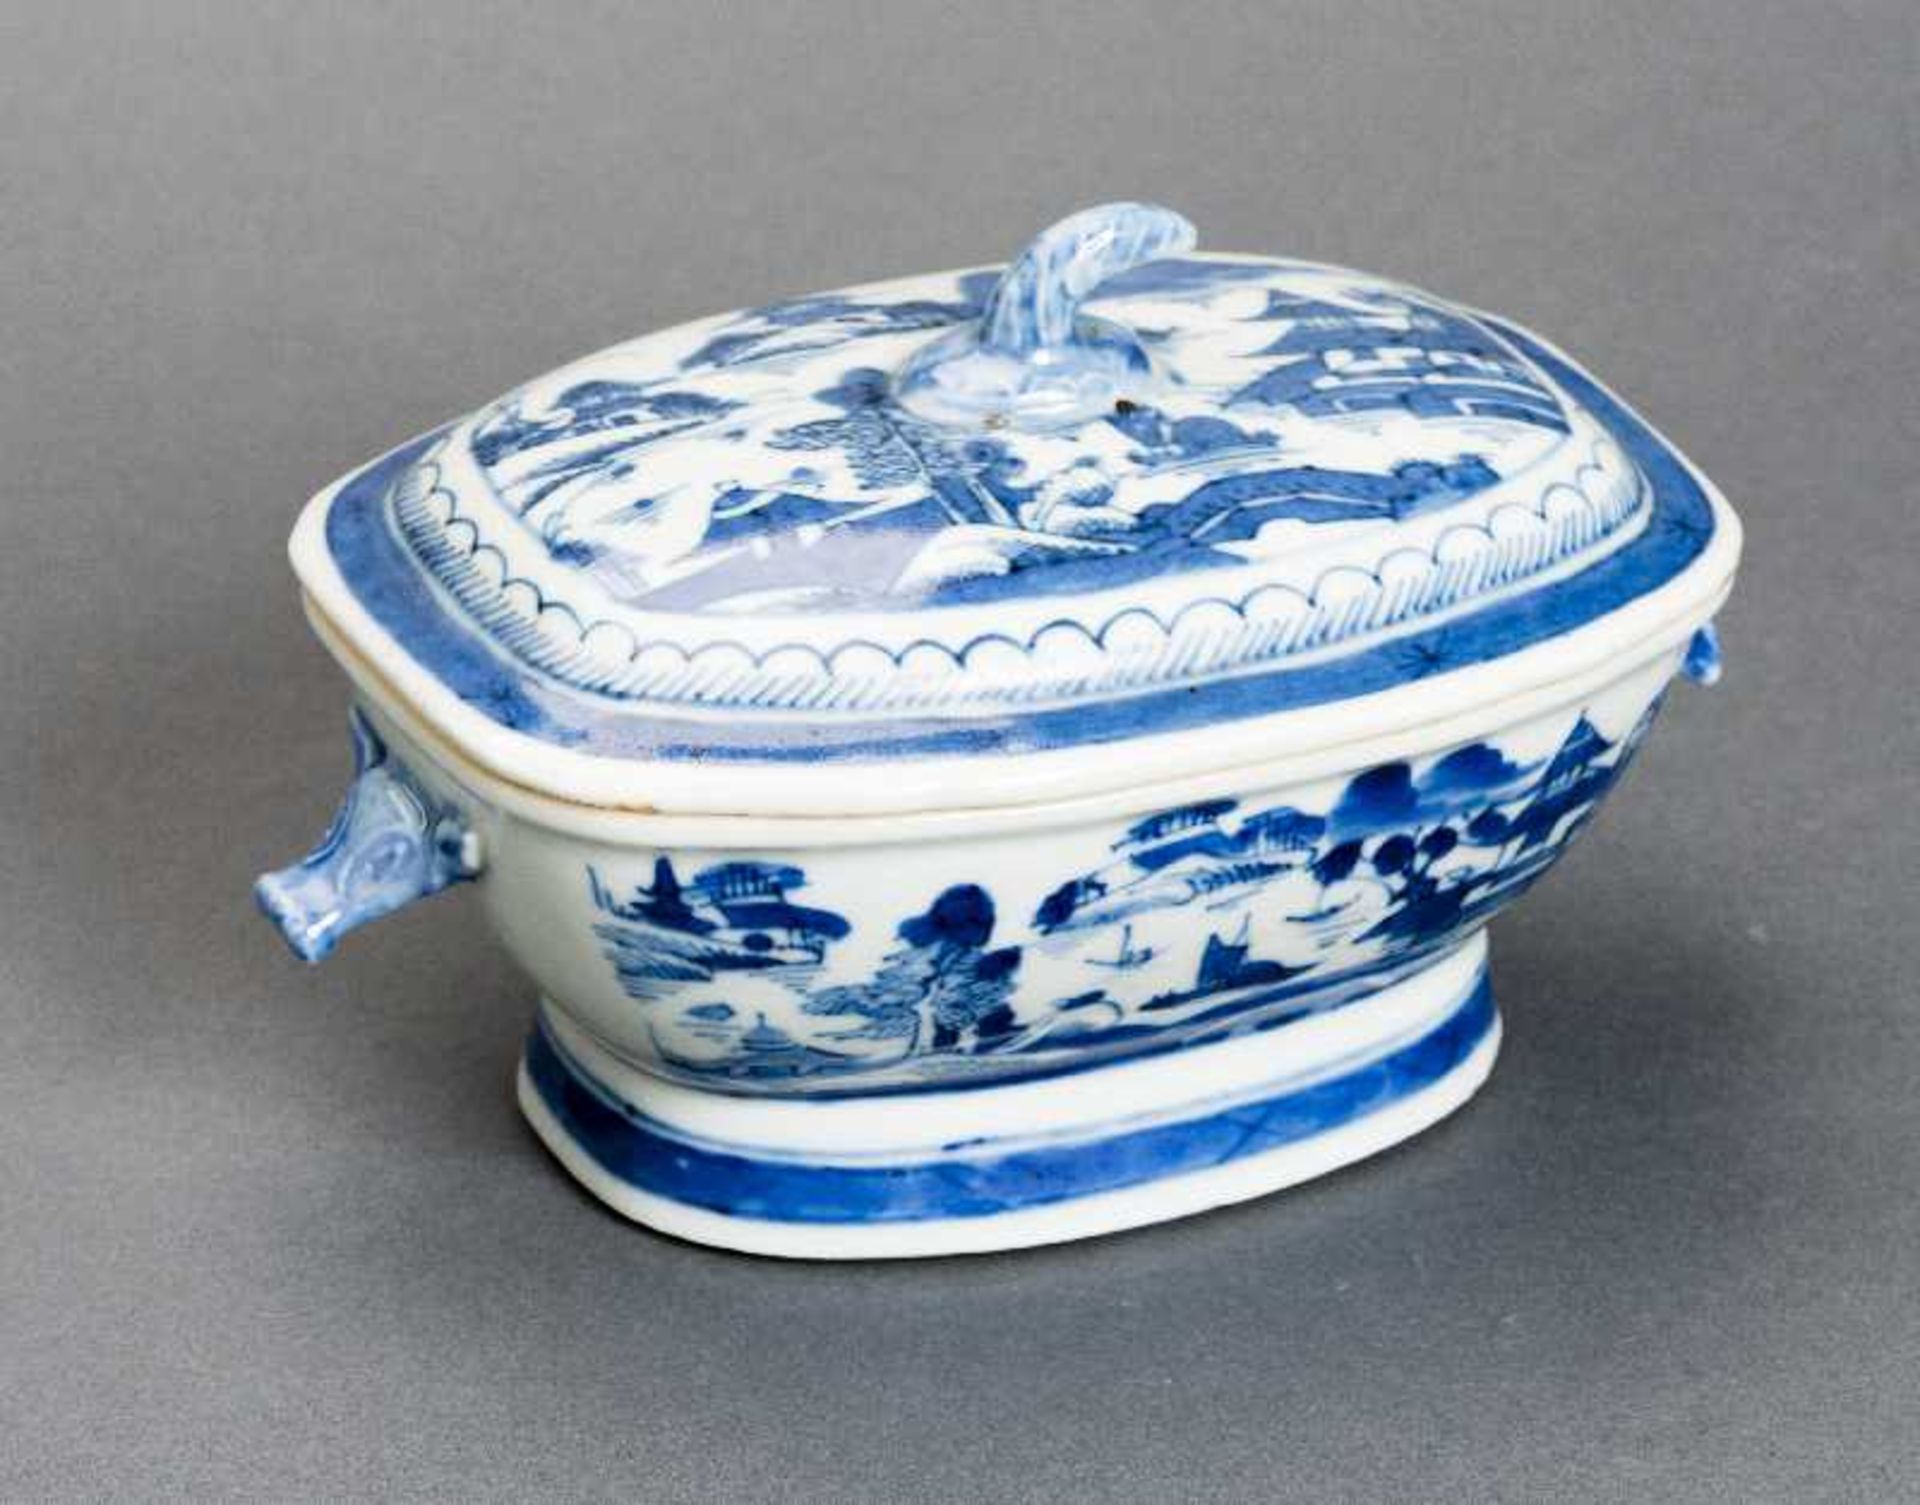 DECKELSCHALE Blauweiß-Porzellan. China, Qing-Dynastie, 19. Jh. Diese sehr ansprechende oval- - Bild 2 aus 6